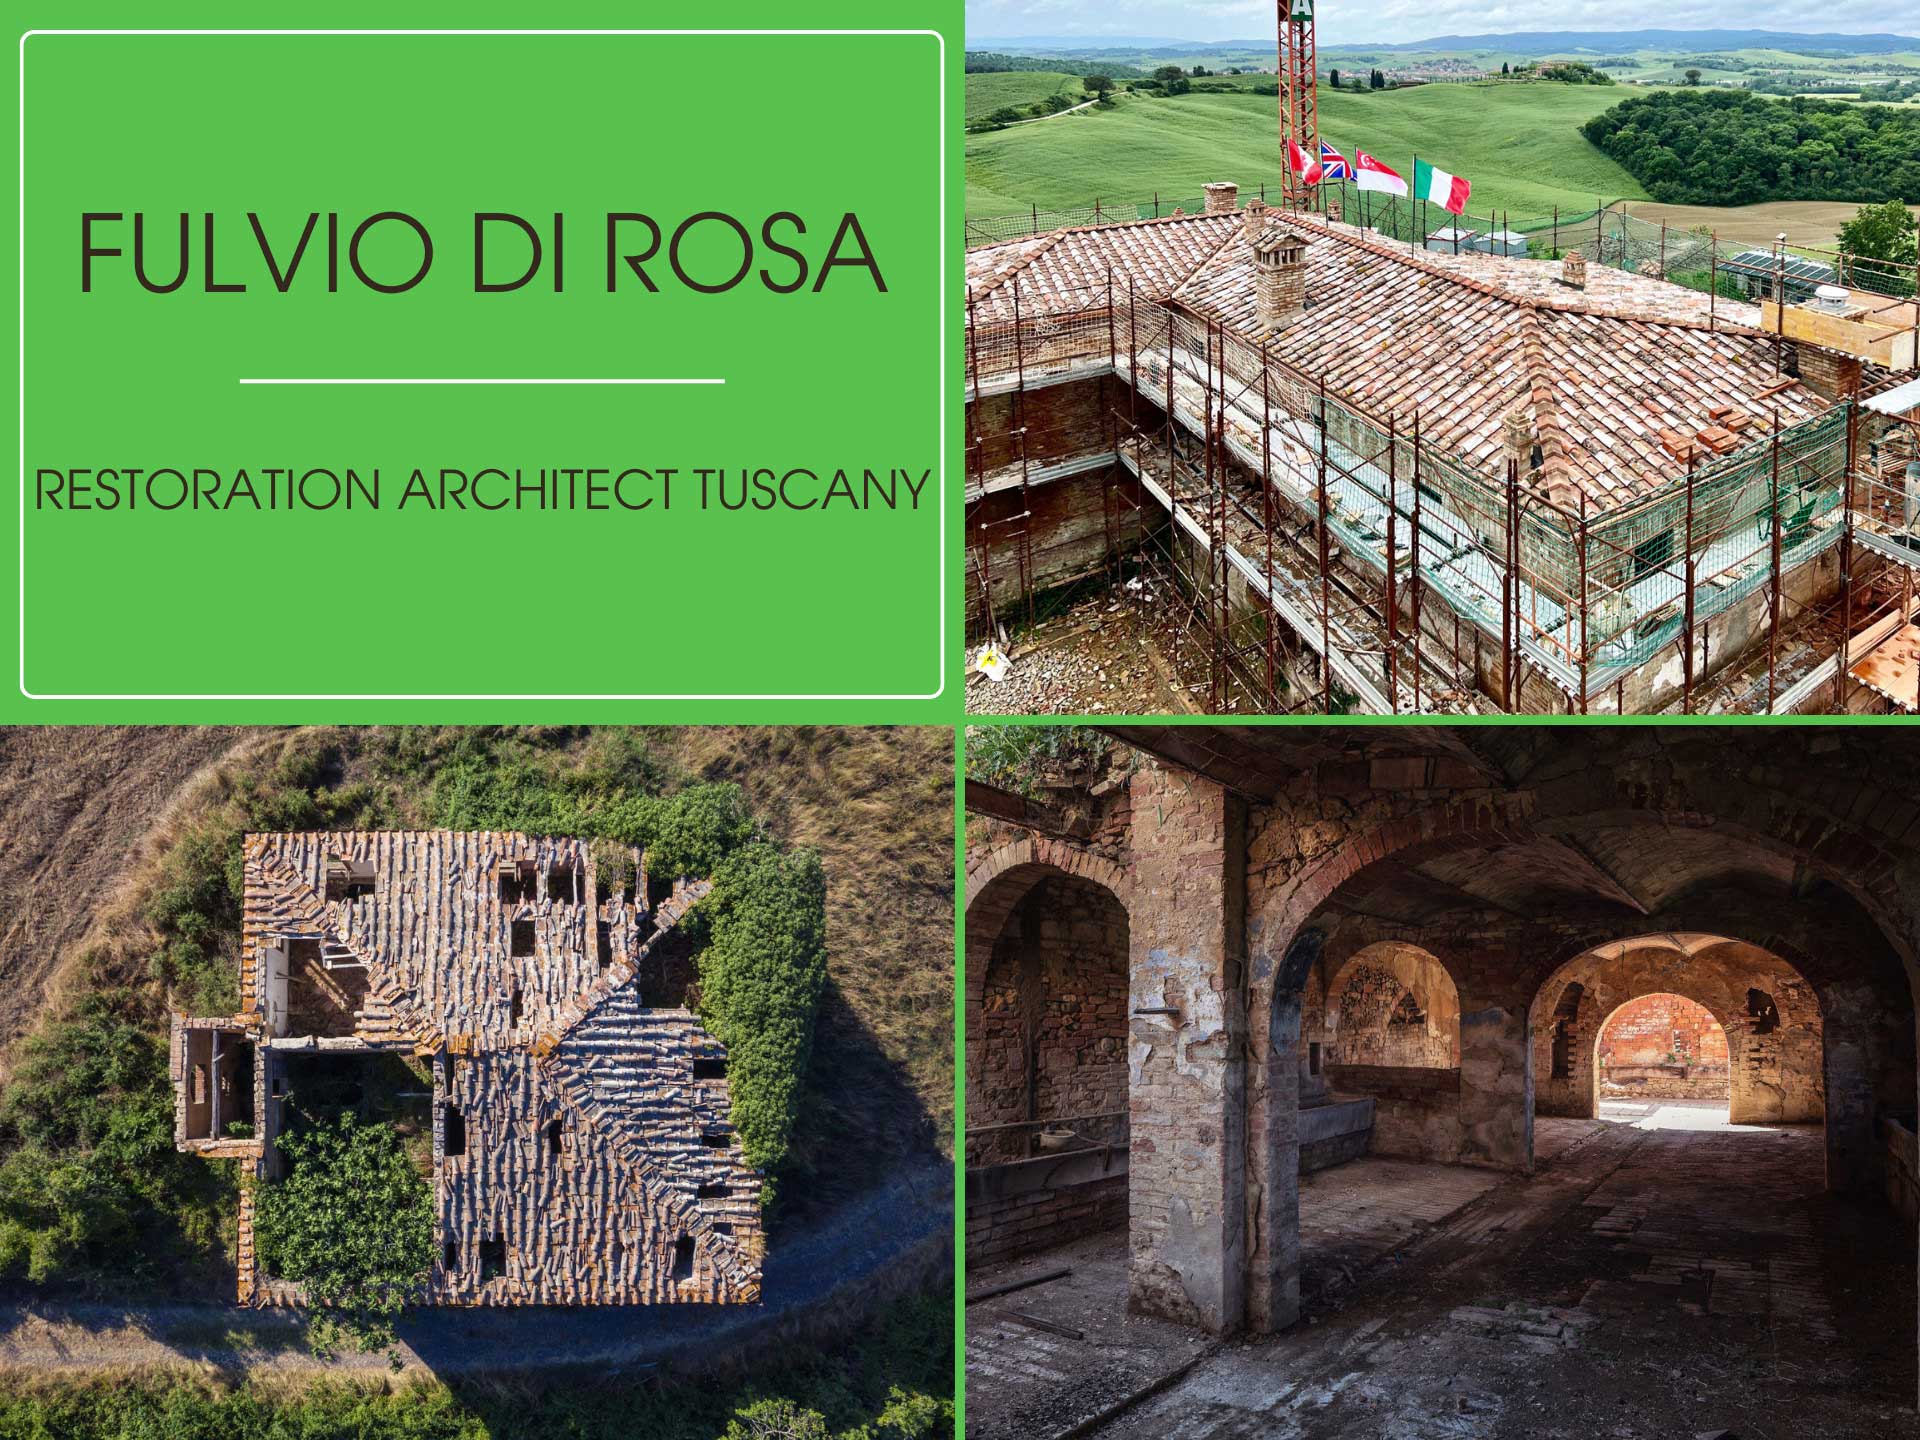 Fulvio Di Rosa - Work in Progress